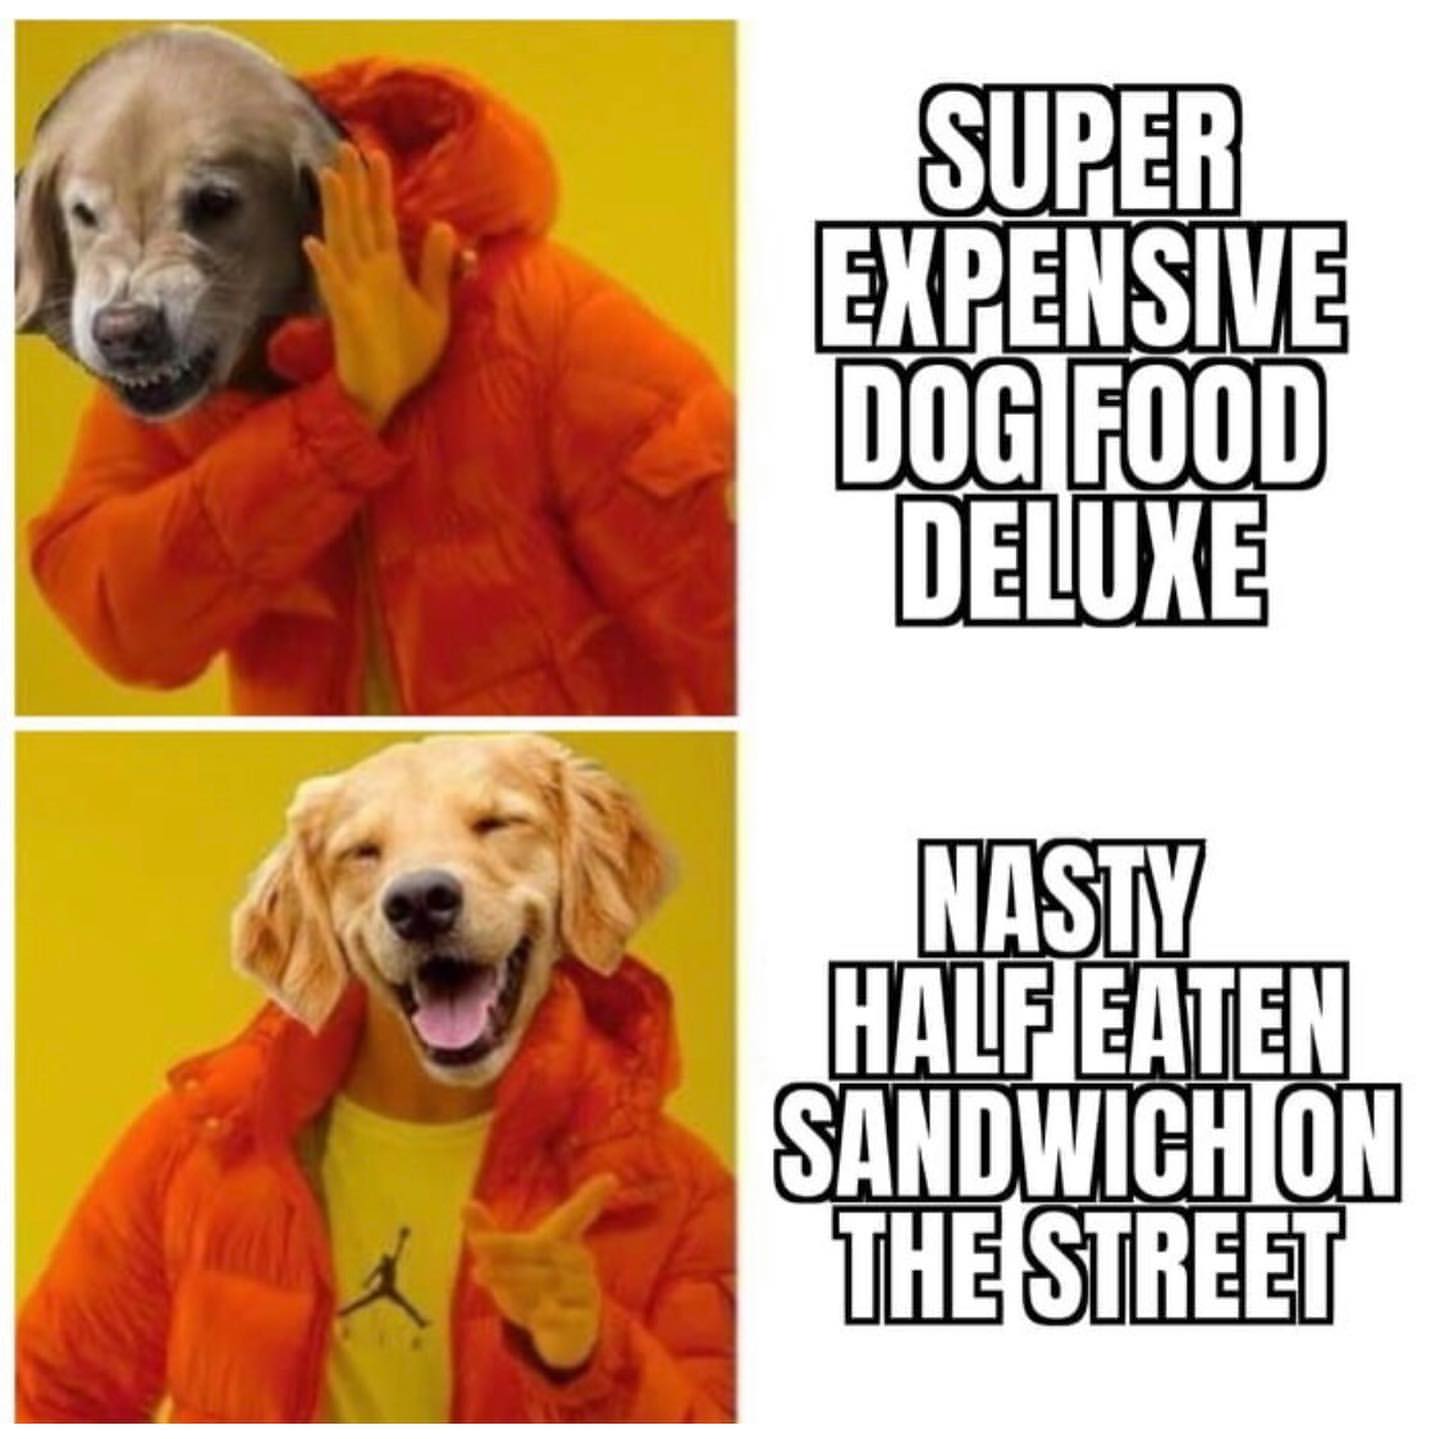 Super expensive dog food deluxe. Nasty half eaten sandwich the street.